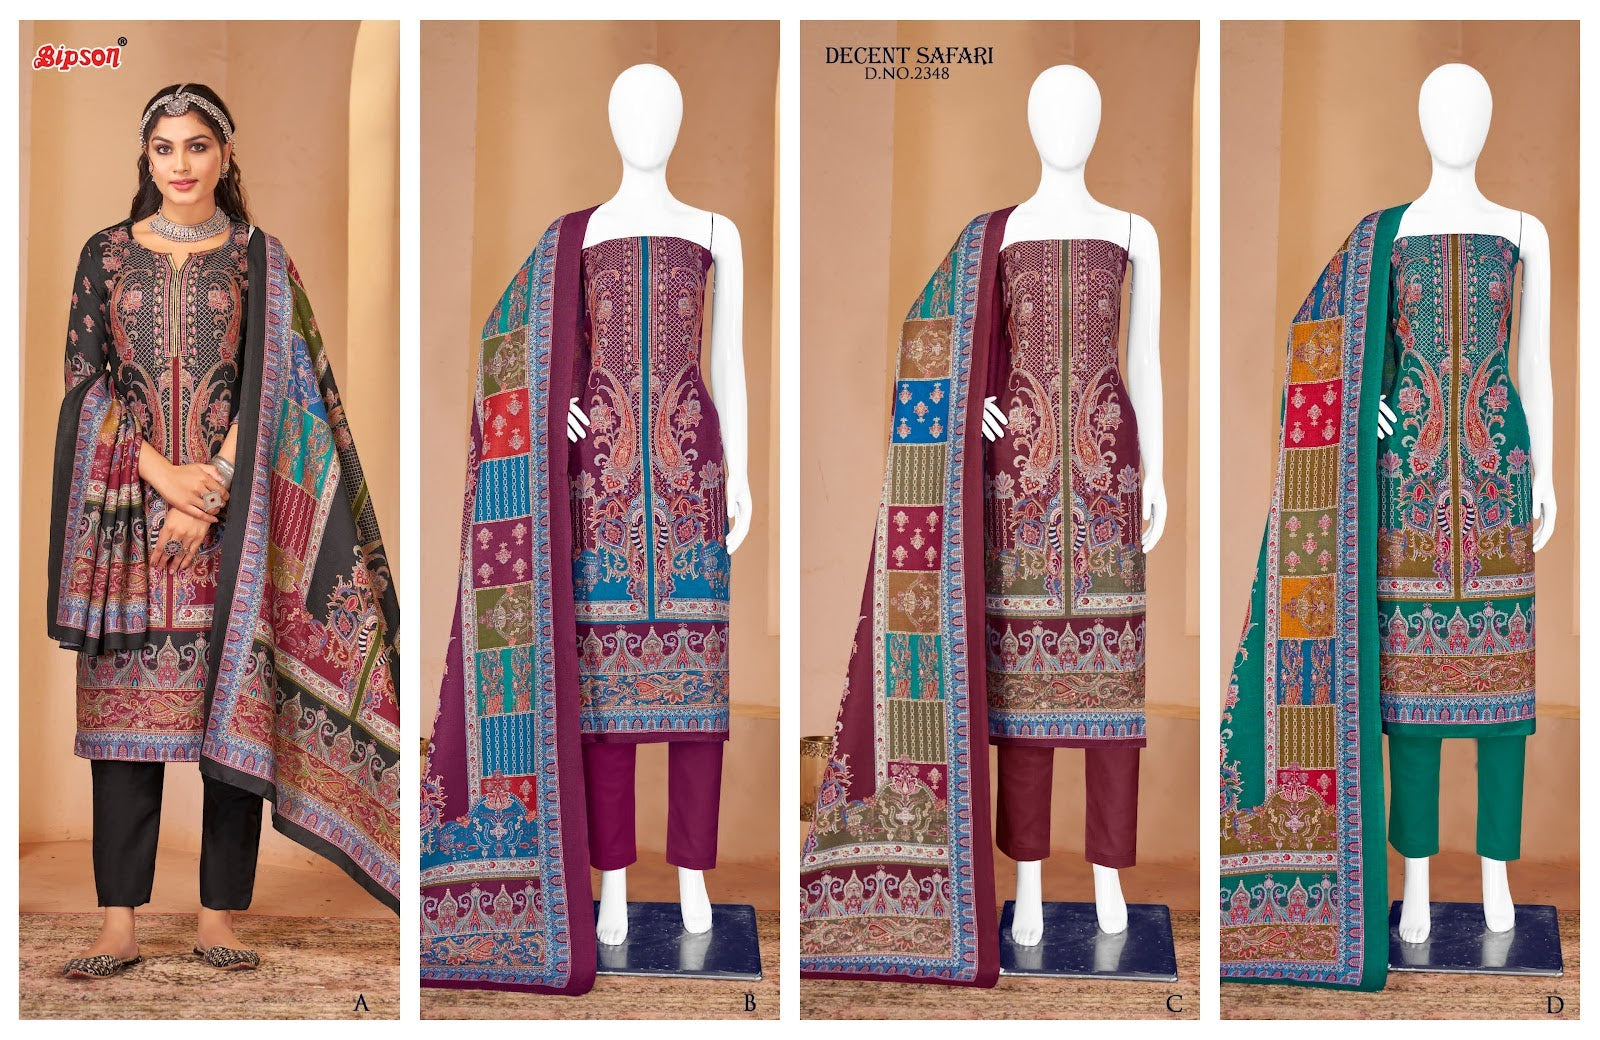 Decent Safari 2348 Bipson Prints Pashmina Suits